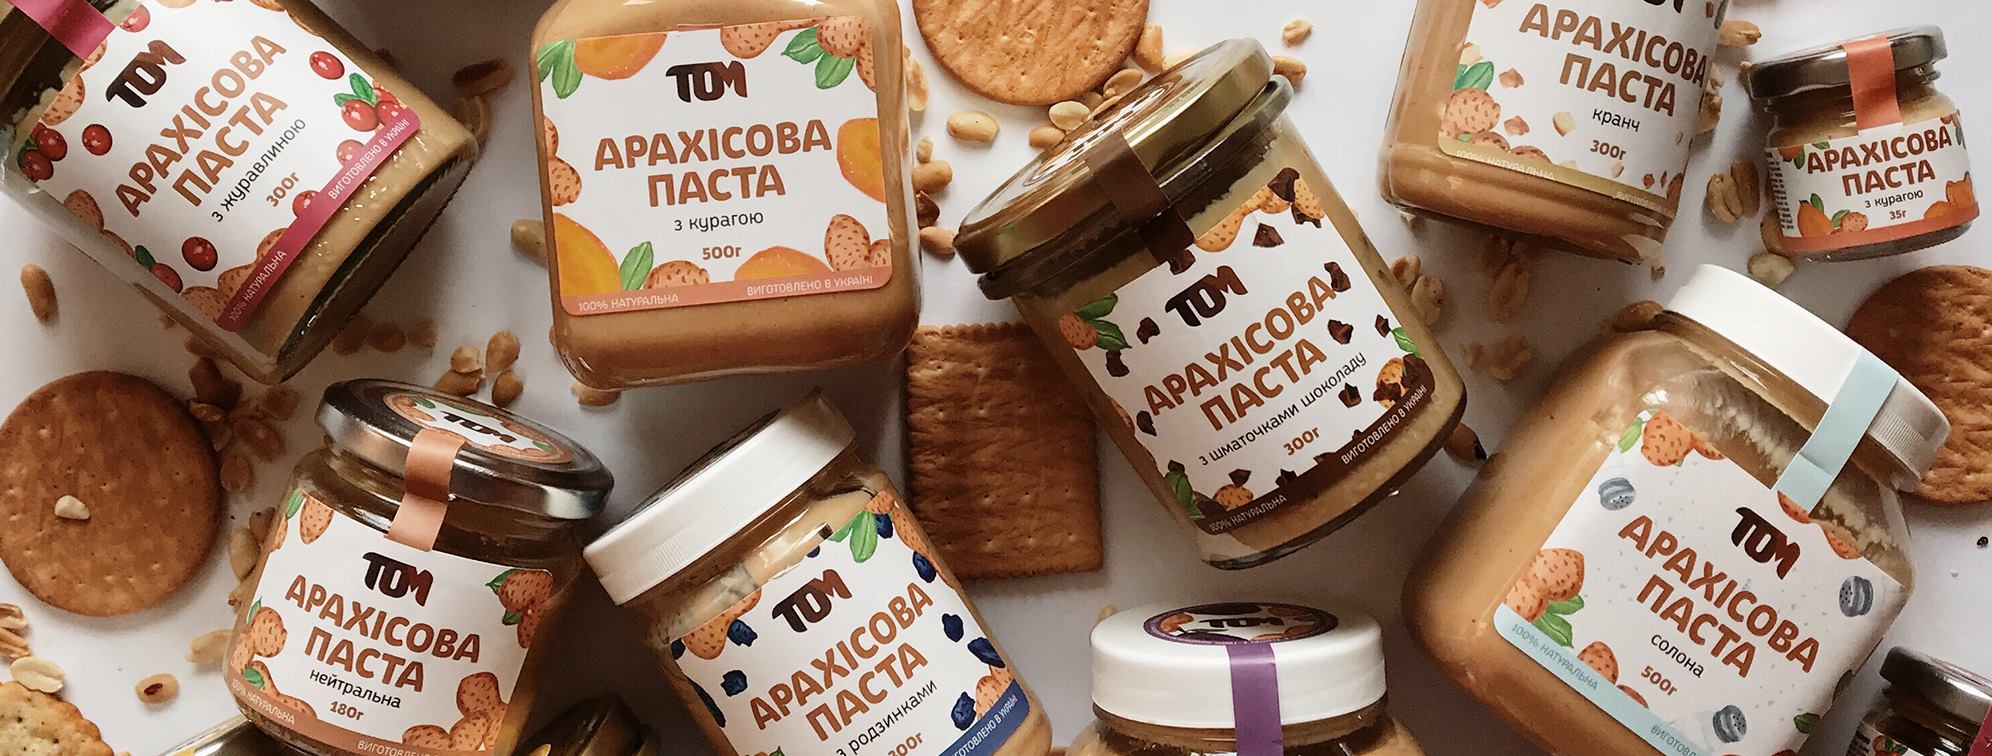 Спілка студентів стала найбільшим виробником арахісової пасти в Україні